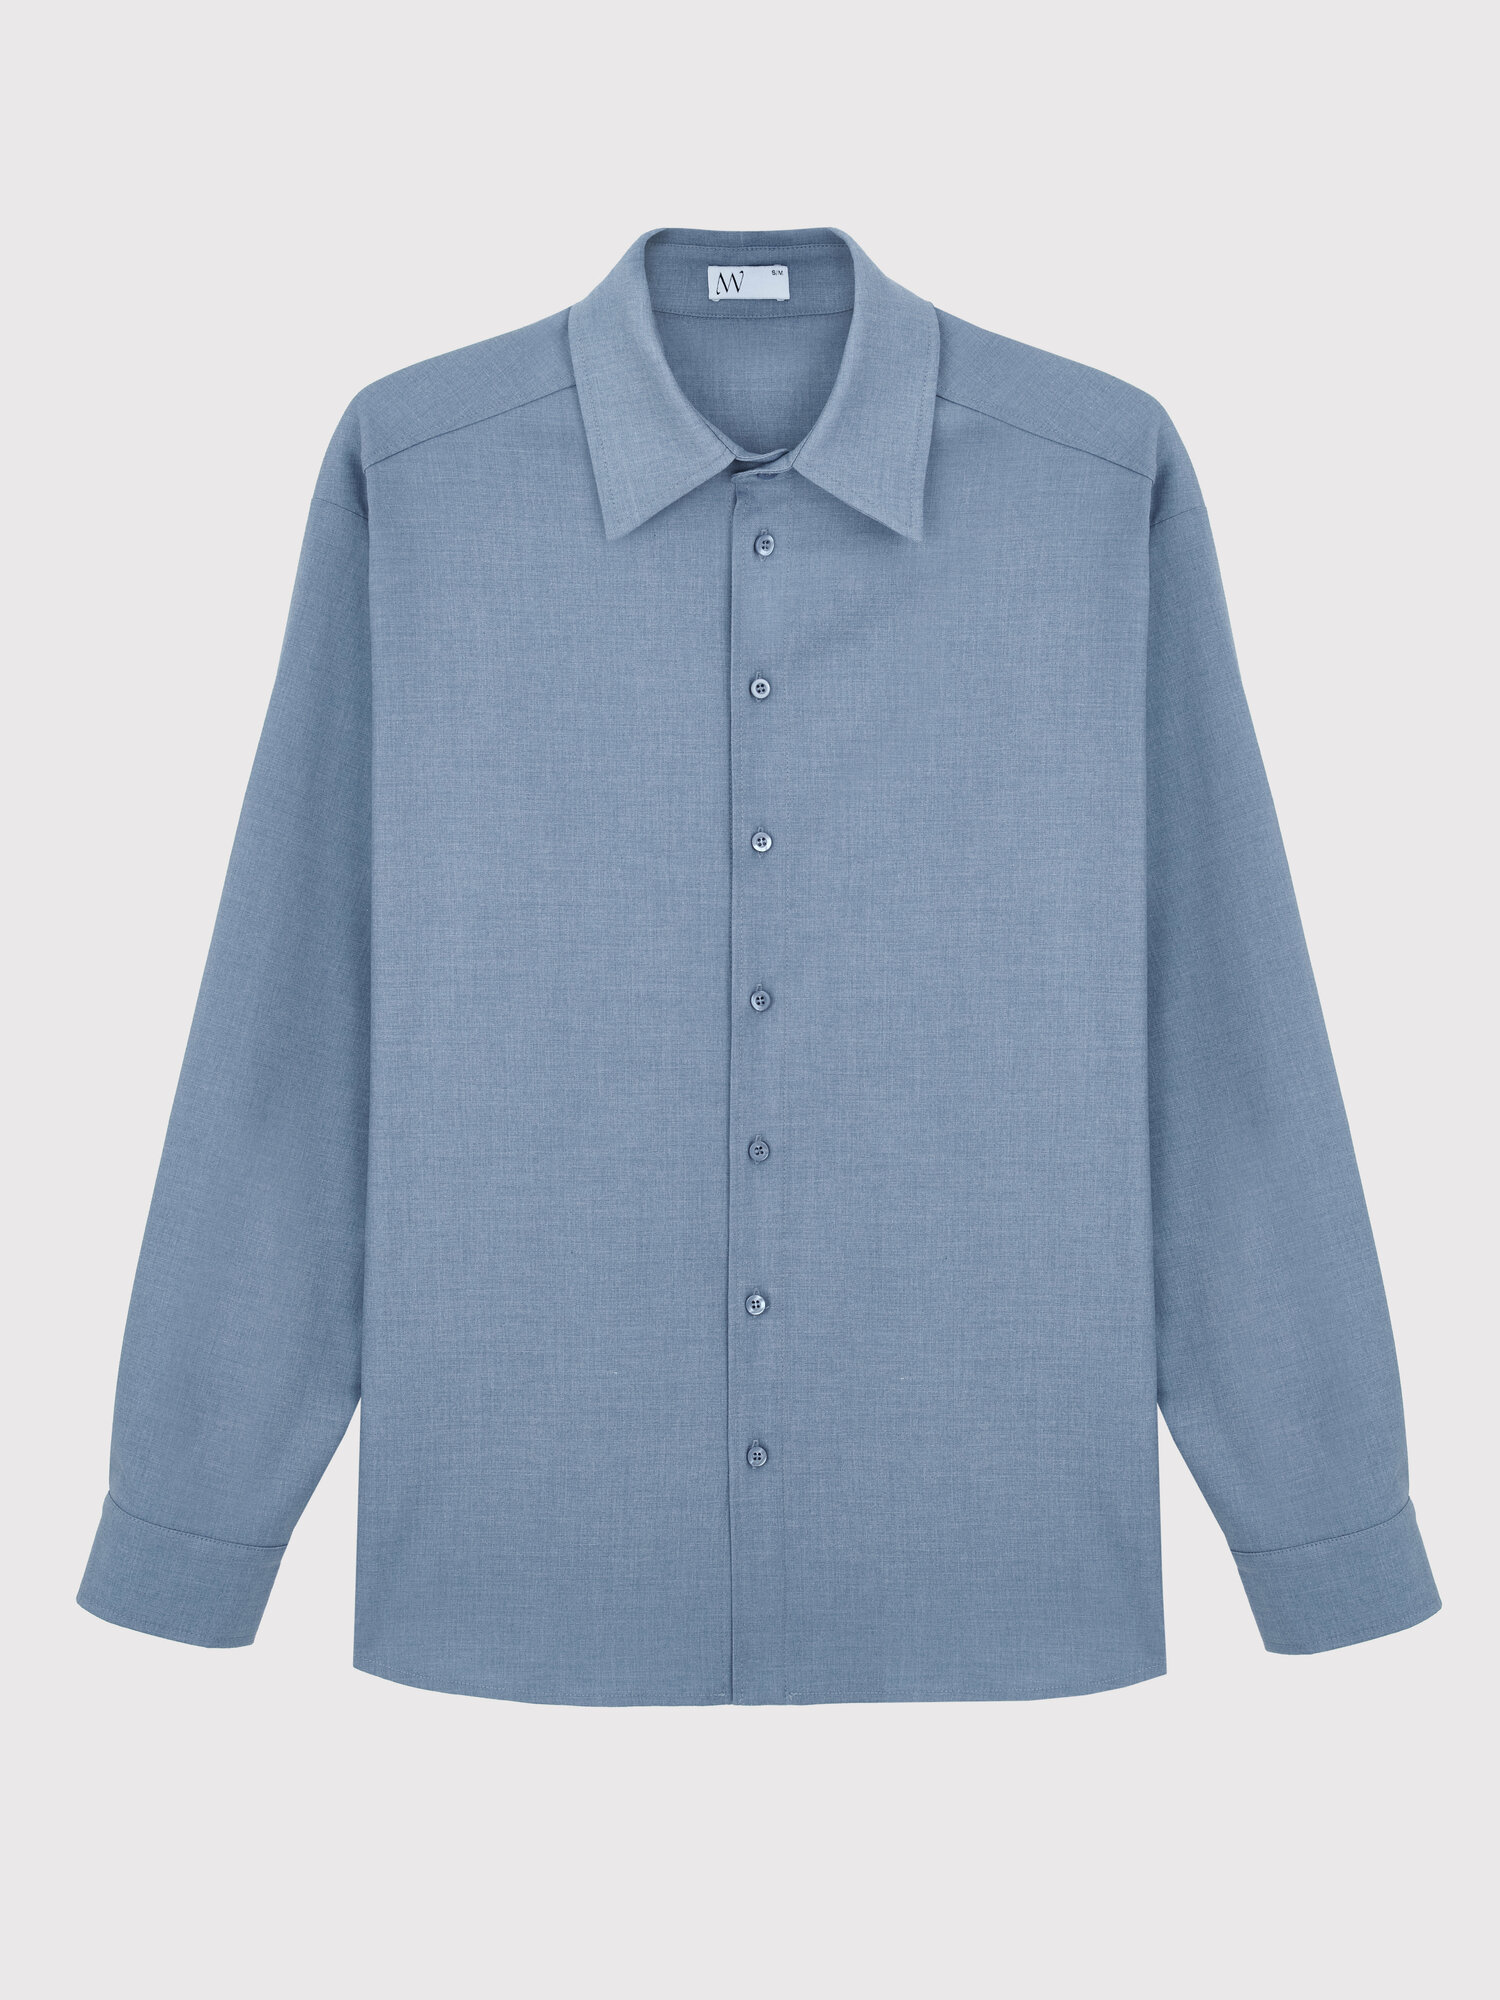 Рубашка WEME, размер S/M, голубой